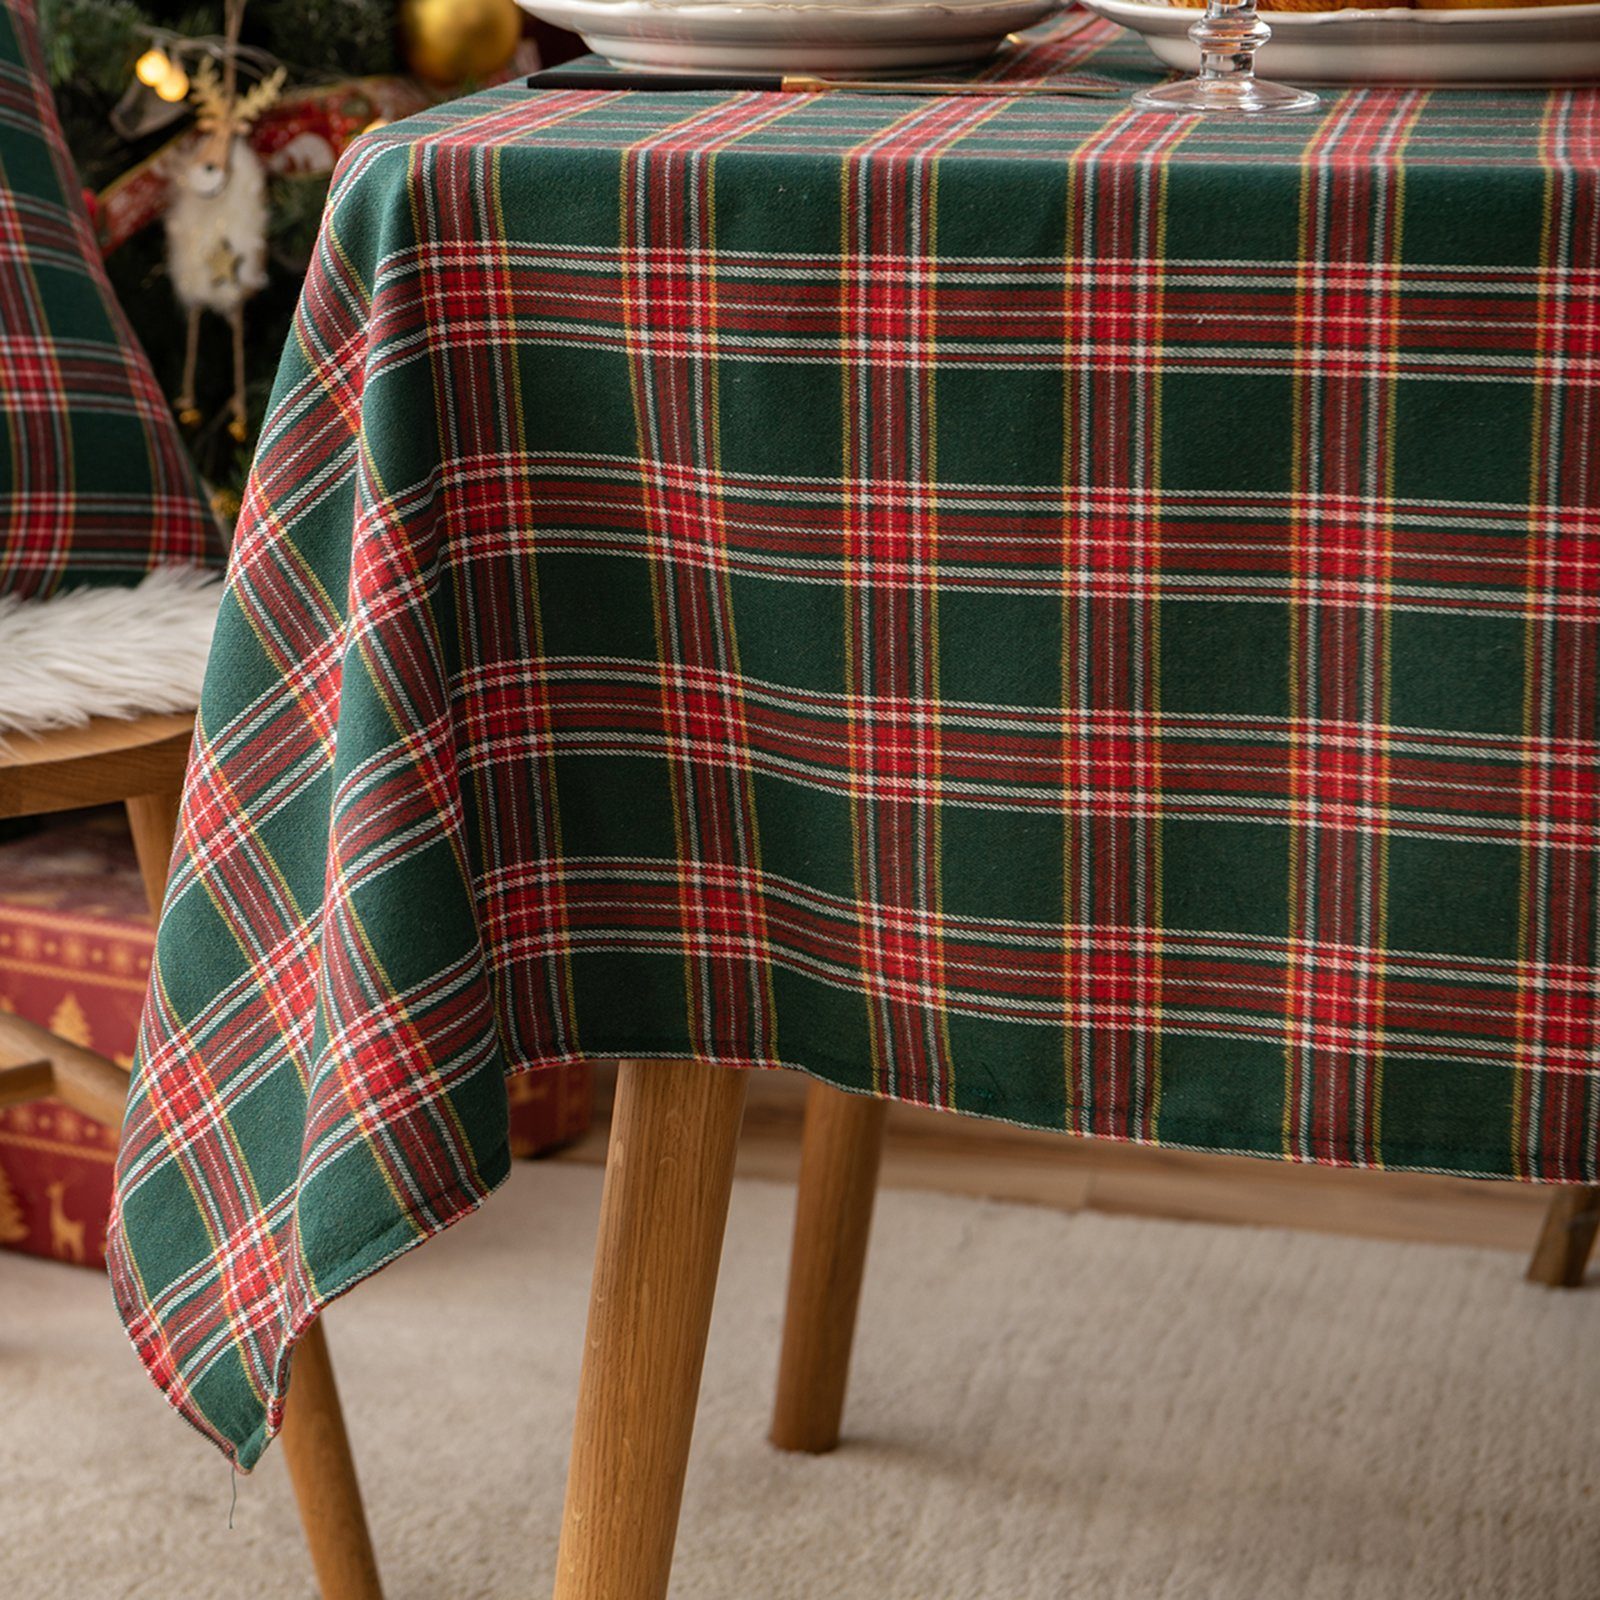 Qelus Tischläufer Tischdecke Karierte Rot&Grün Partydekoration Weihnachten Tischdecke